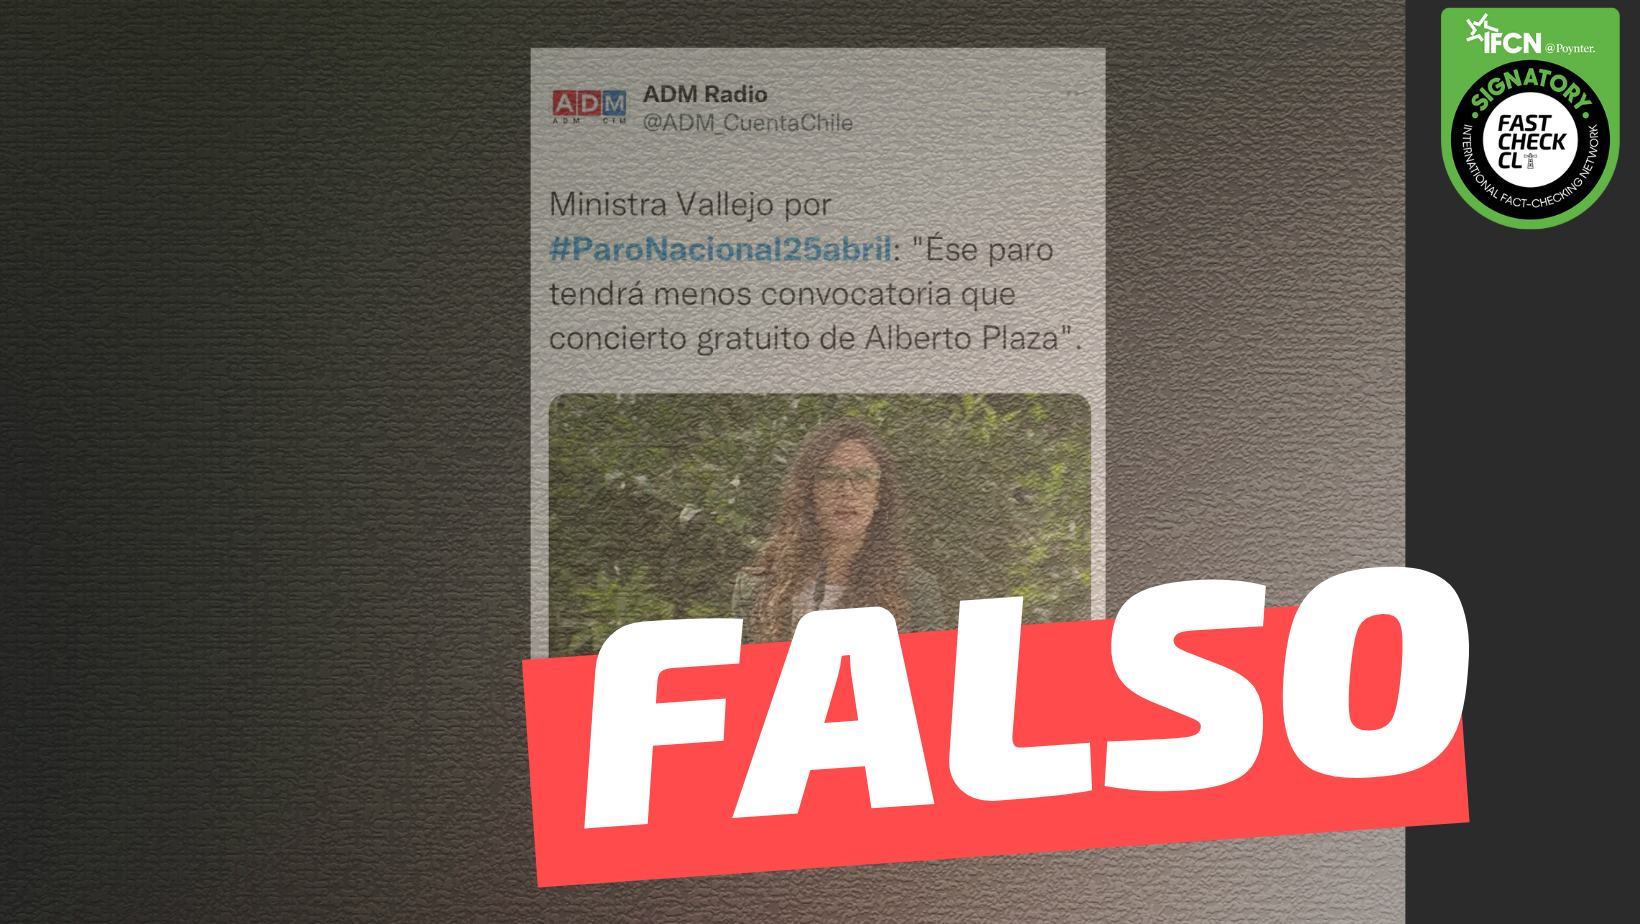 You are currently viewing Ministra Vallejo por Paro Nacional 25 de abril: “Ese paro tendrá menos convocatoria que concierto gratuito de Alberto Plaza”: #Falso